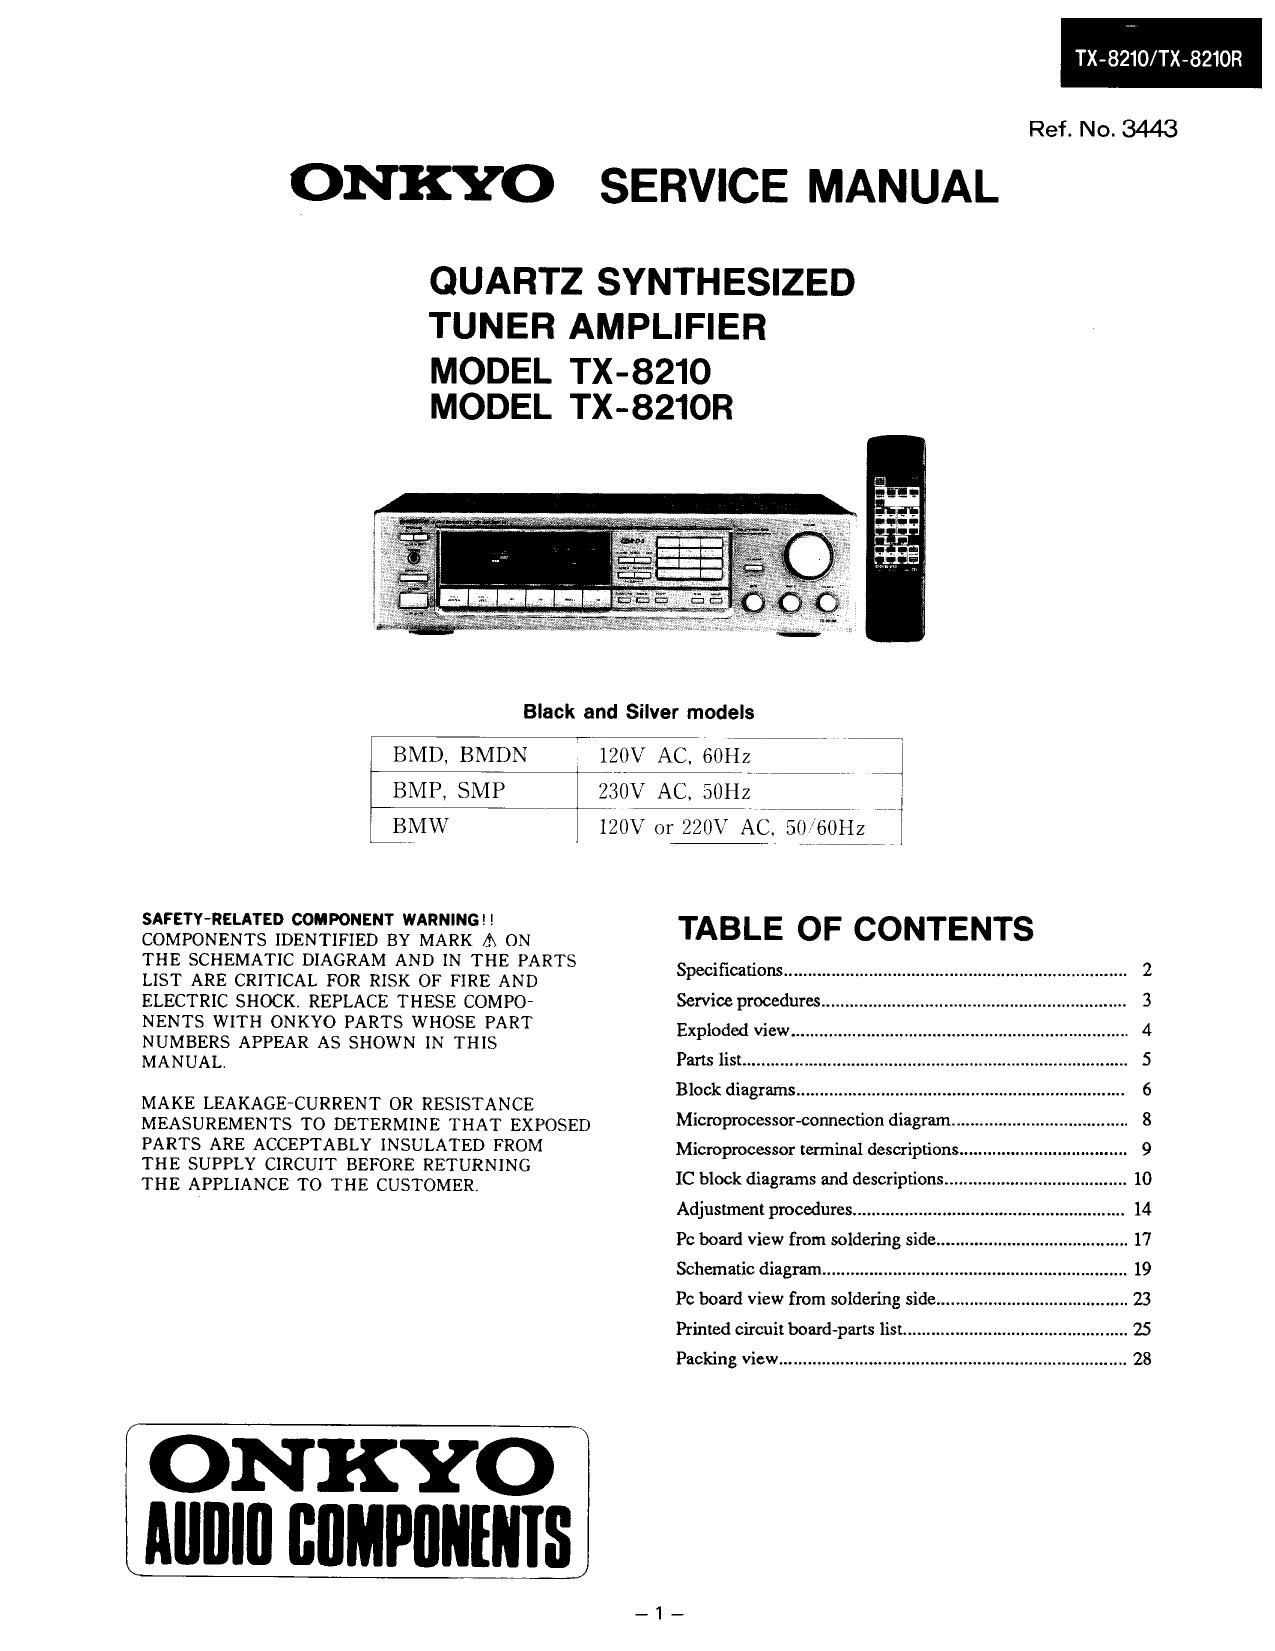 Onkyo TX 8210 R Service Manual